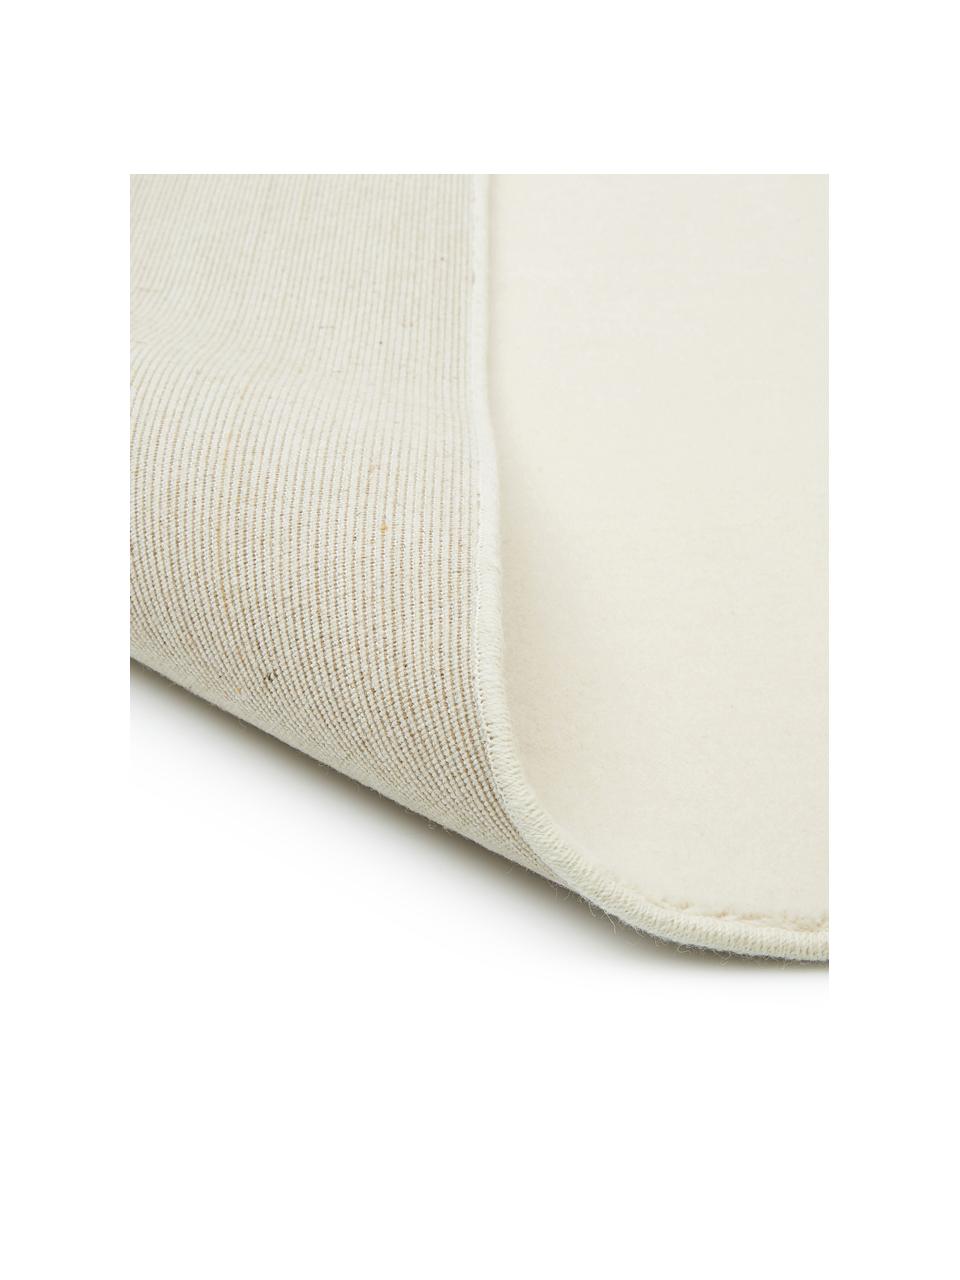 Wollen loper Ida in beige, Bovenzijde: 100% wol, Onderzijde: 60% jute, 40% polyester B, Beige, B 80 x L 250 cm